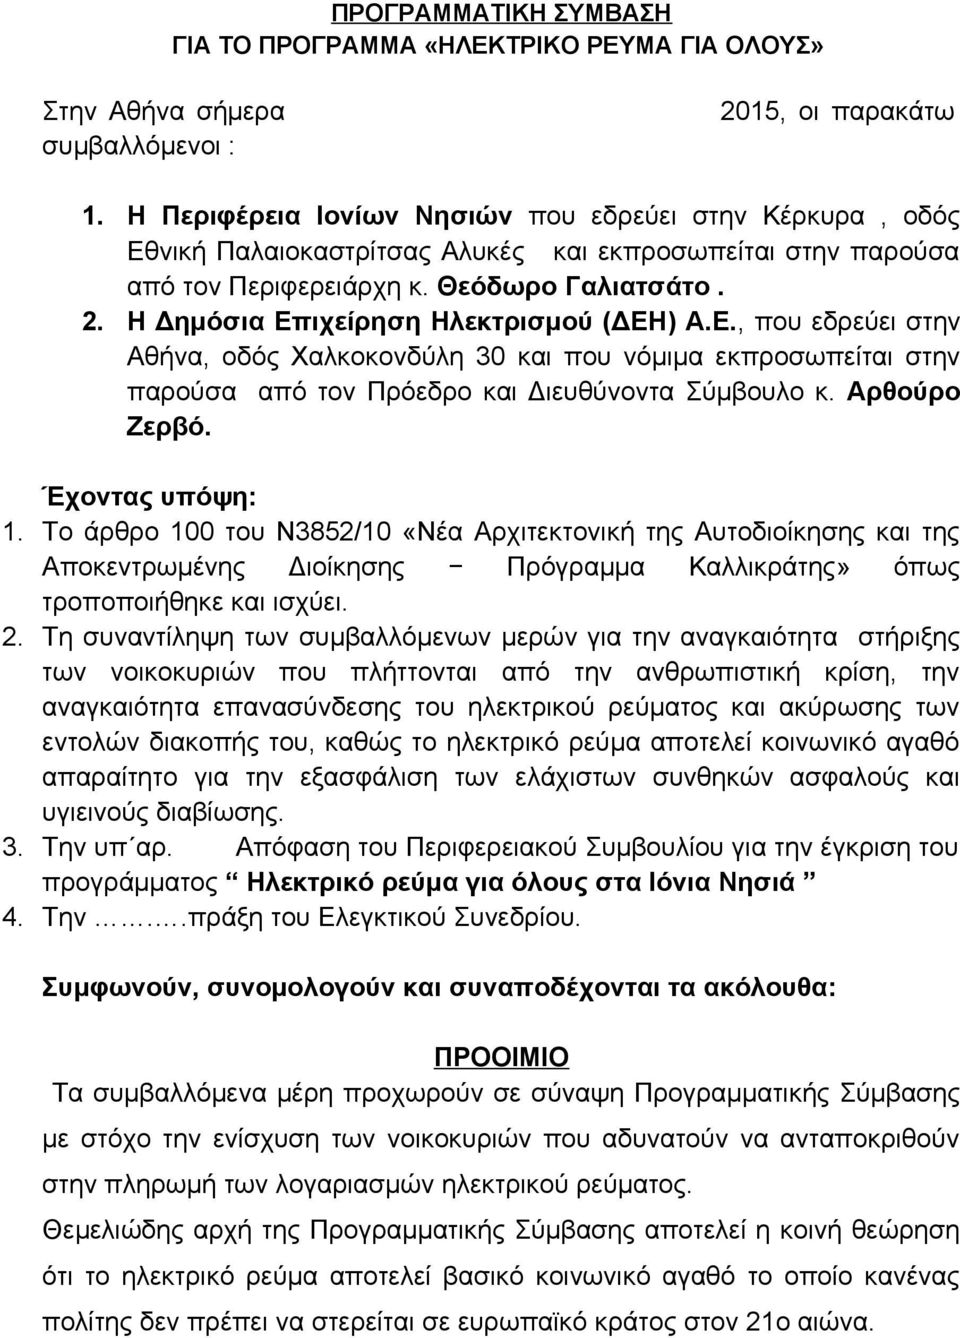 Η Δημόσια Επιχείρηση Ηλεκτρισμού (ΔΕΗ) Α.Ε., που εδρεύει στην Αθήνα, οδός Χαλκοκονδύλη 30 και που νόμιμα εκπροσωπείται στην παρούσα από τον Πρόεδρο και Διευθύνοντα Σύμβουλο κ. Αρθούρο Ζερβό.